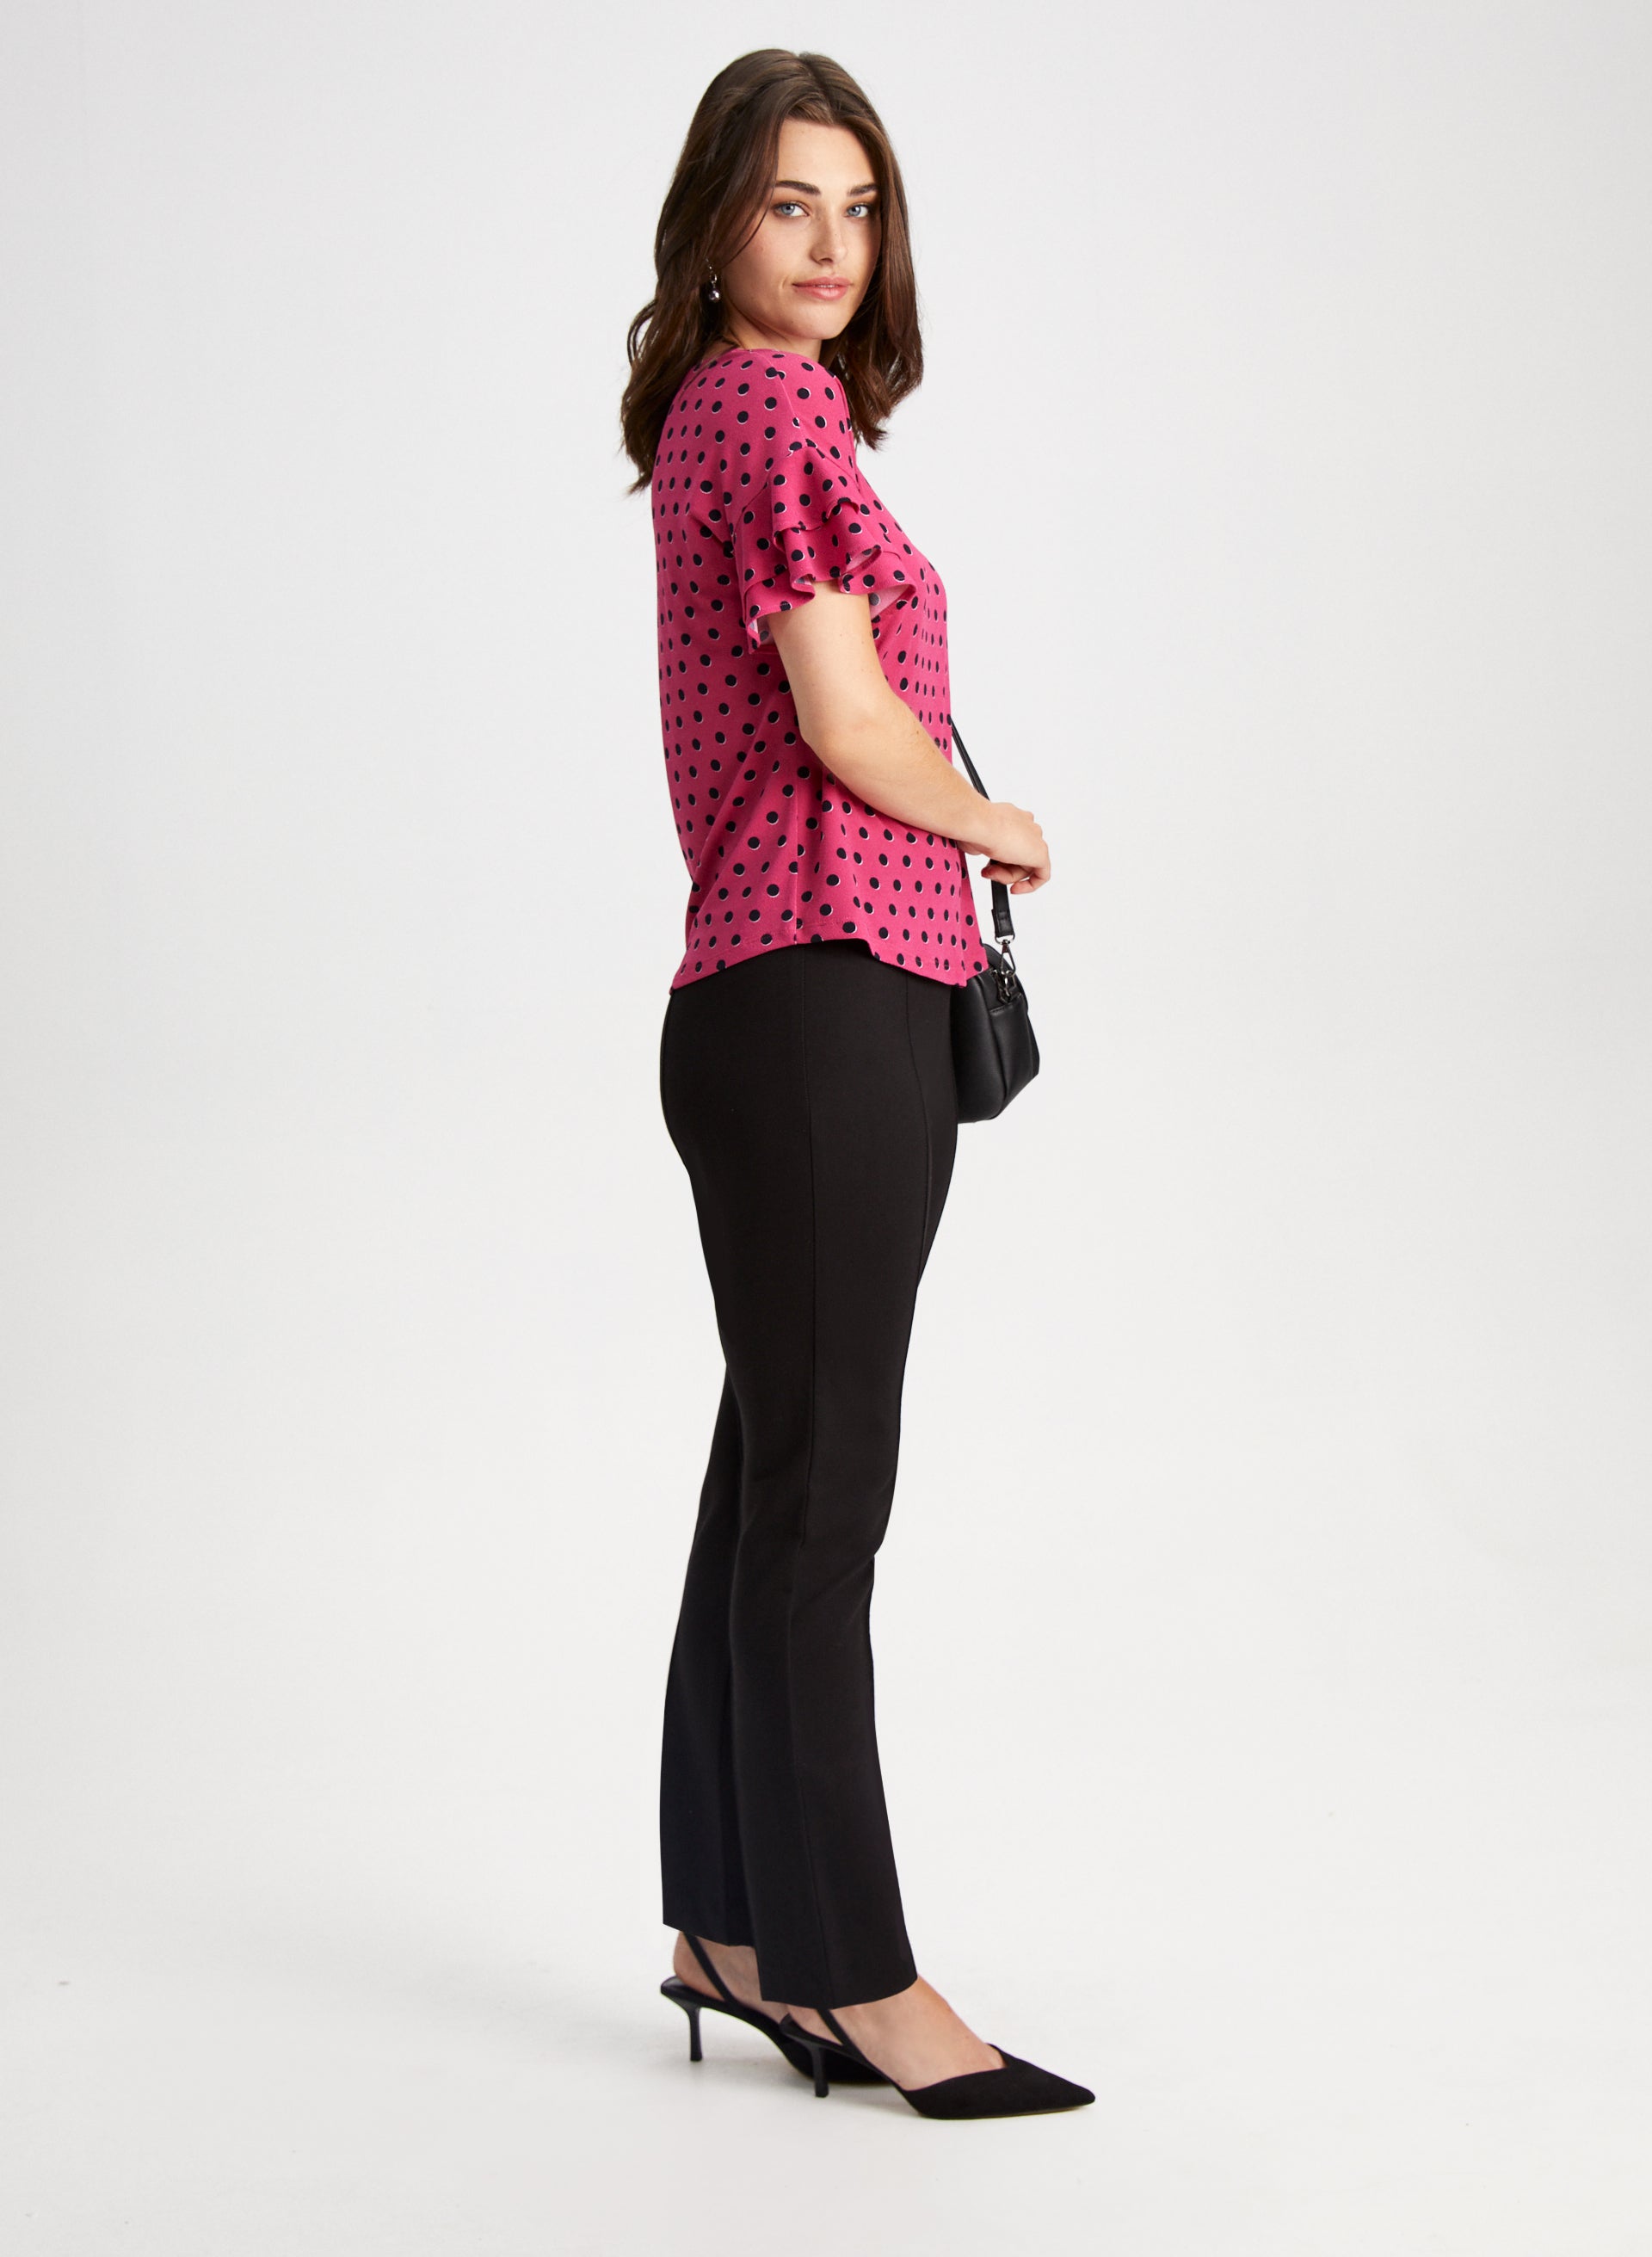 June + Vie By Roaman's Women's Plus Size Formfit Classic Ponte Pant -  26/28, Black : Target